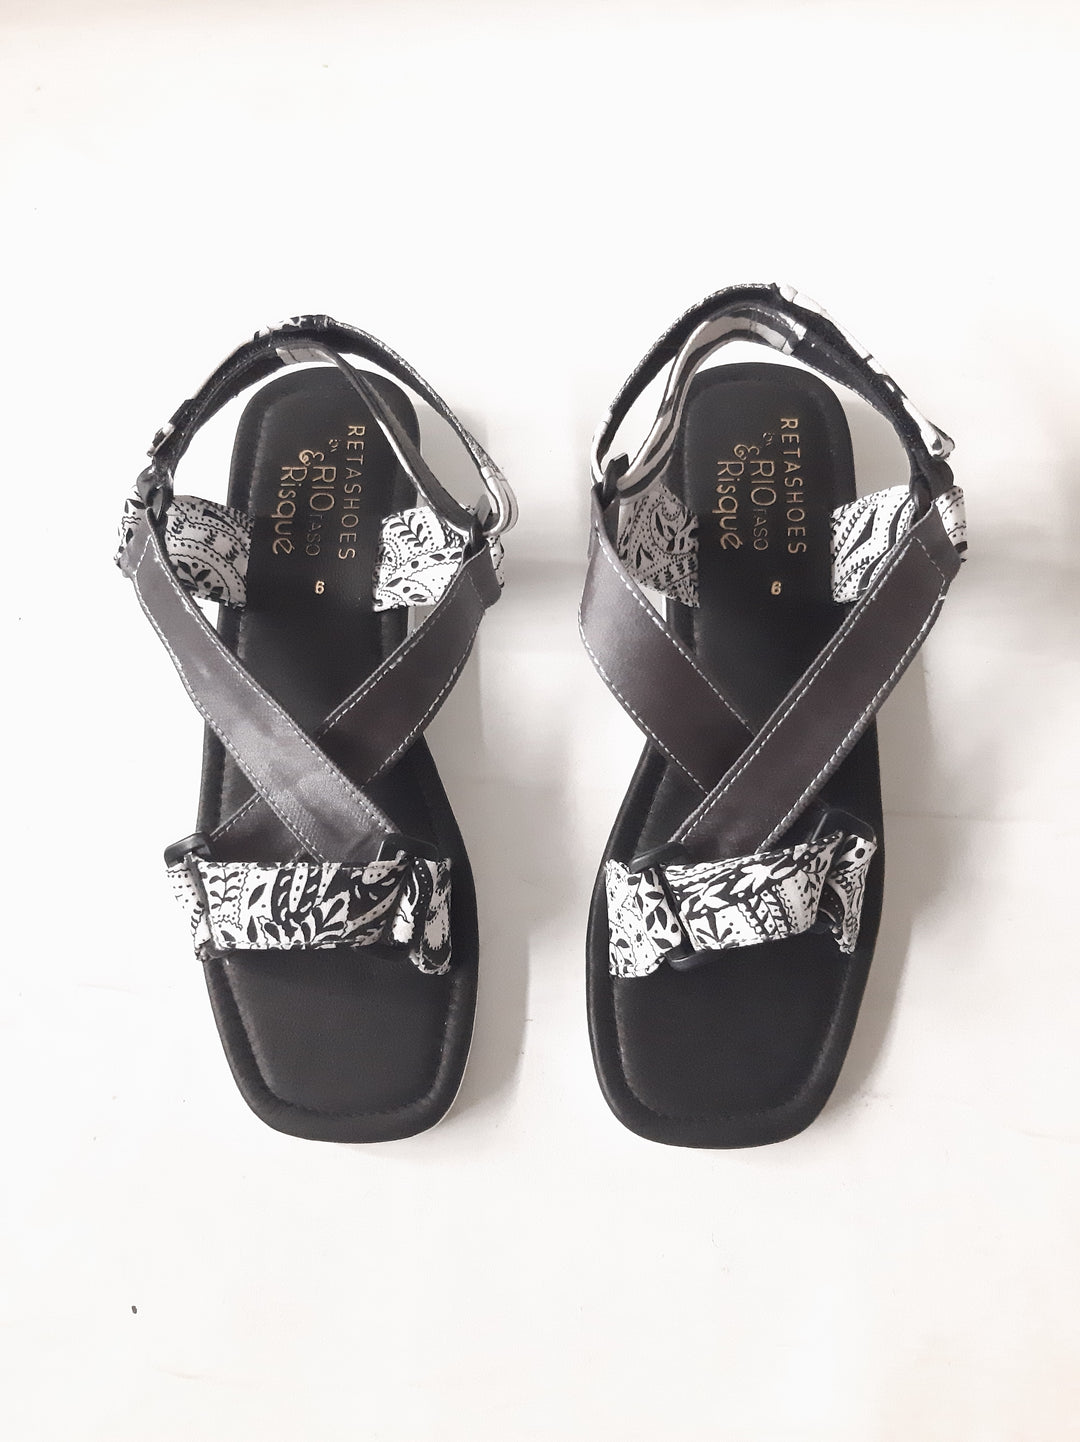 Risqué Designs Womens Retaso Sandals in Black and Silver